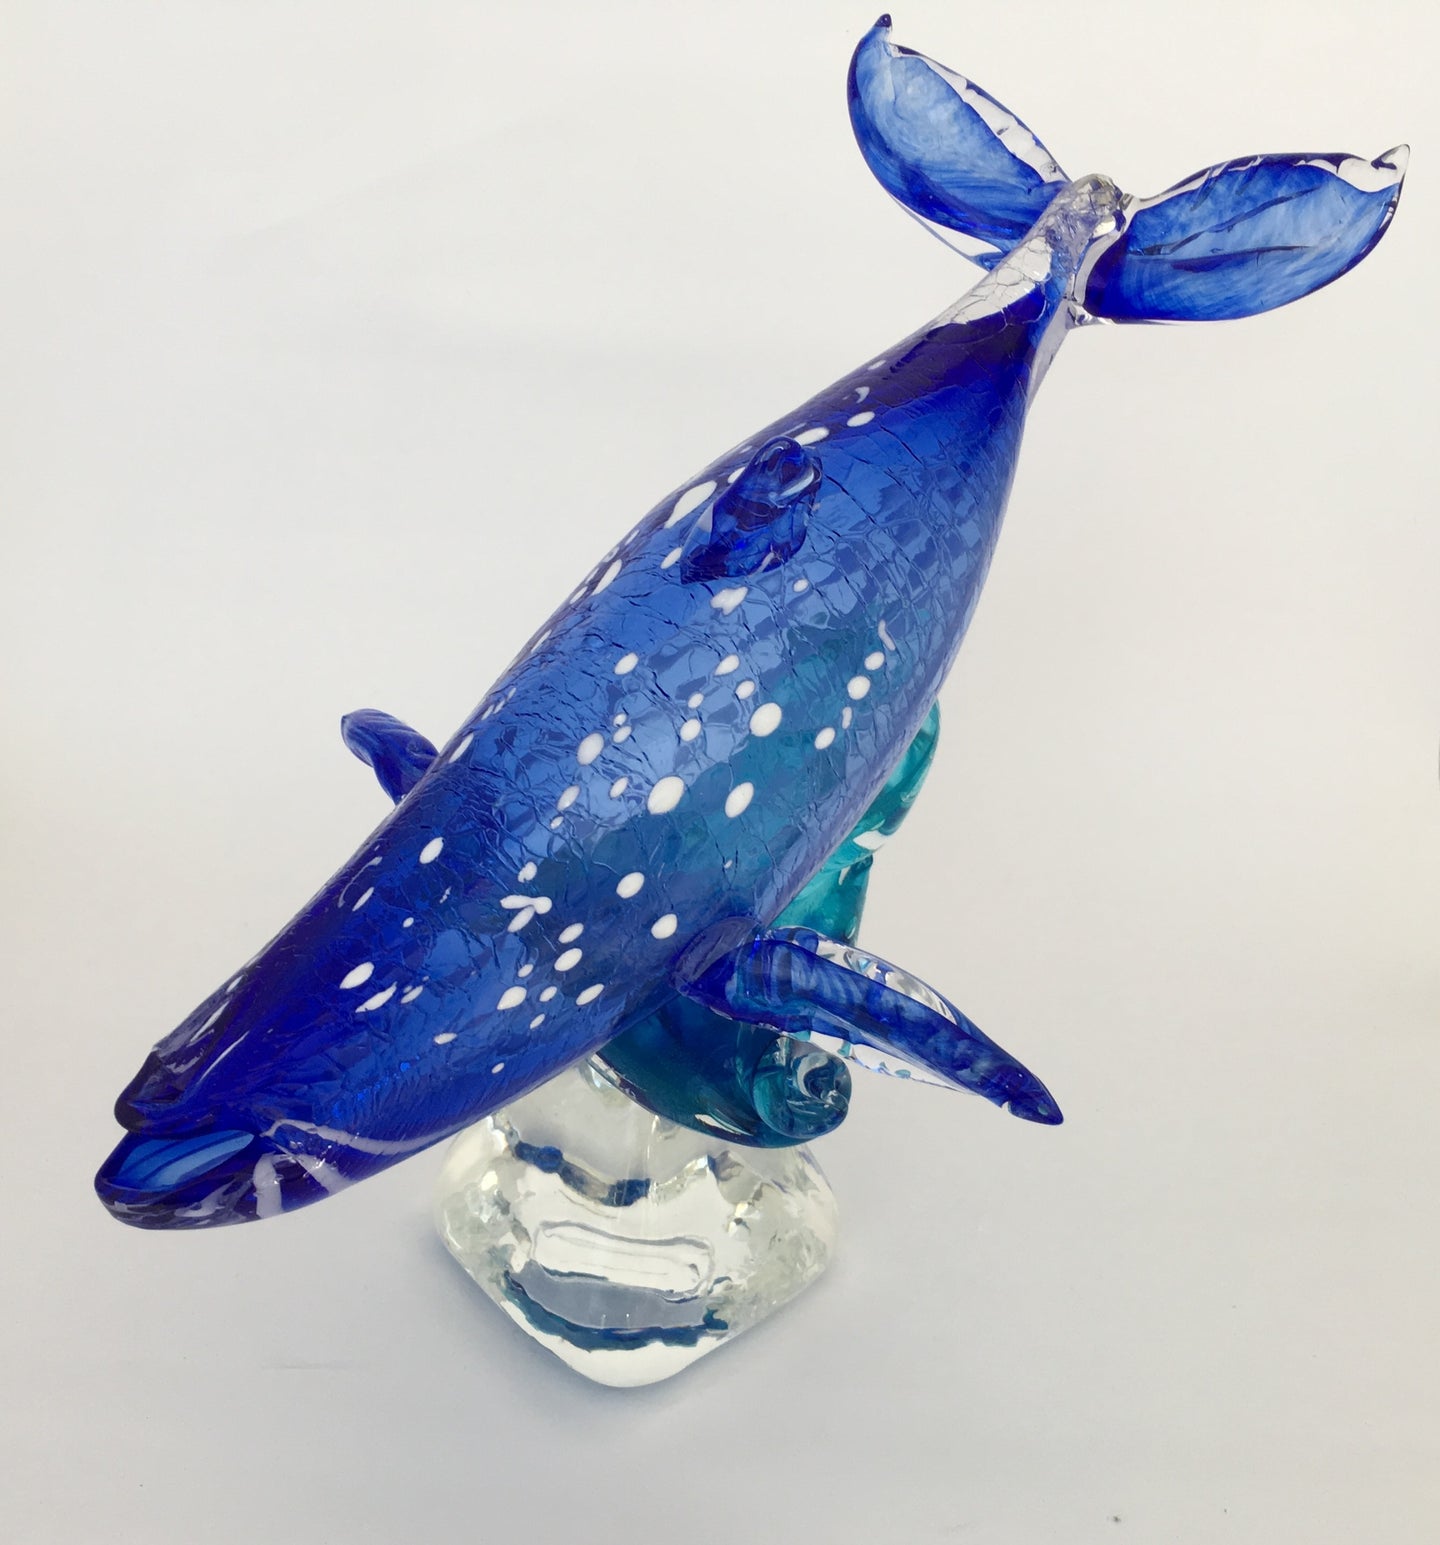 Baleine bleue sur base de verre / Blue Whale on glass base